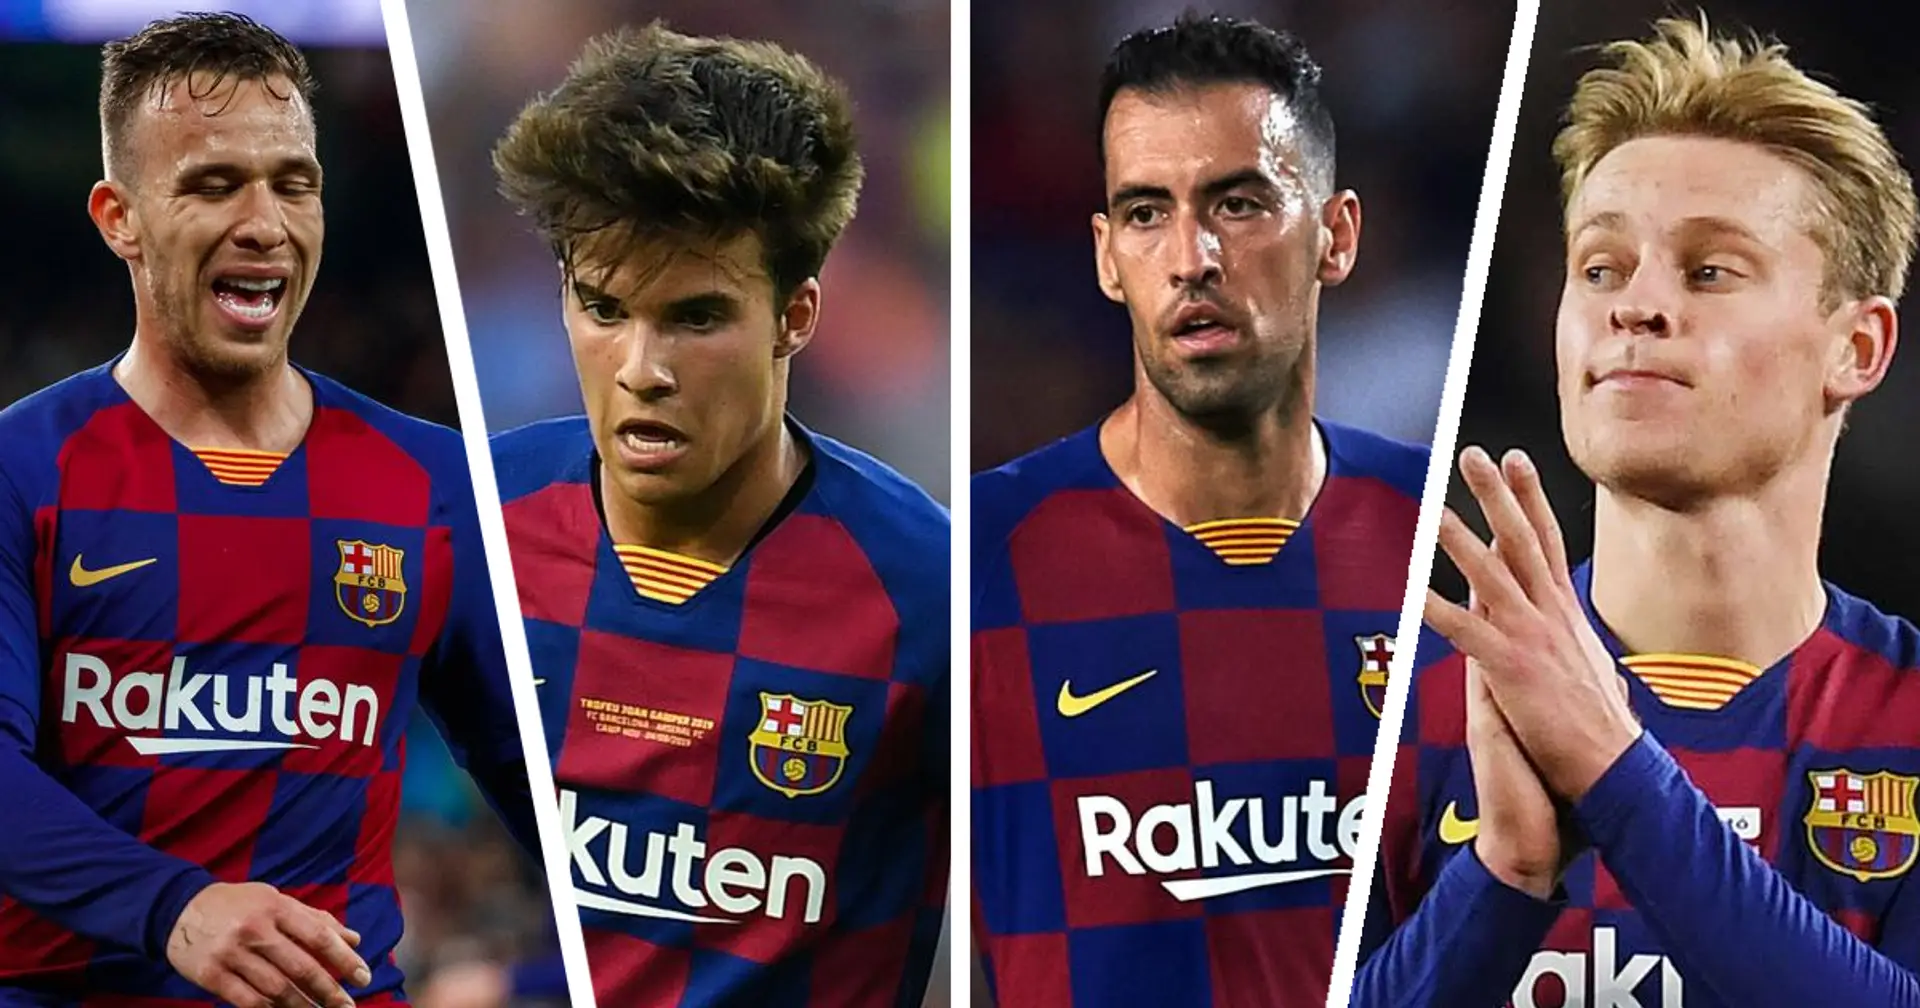 دعوة للنقاش🗣: ما هي التركيبة الأفضل لخط وسط برشلونة في الموسم القادم؟